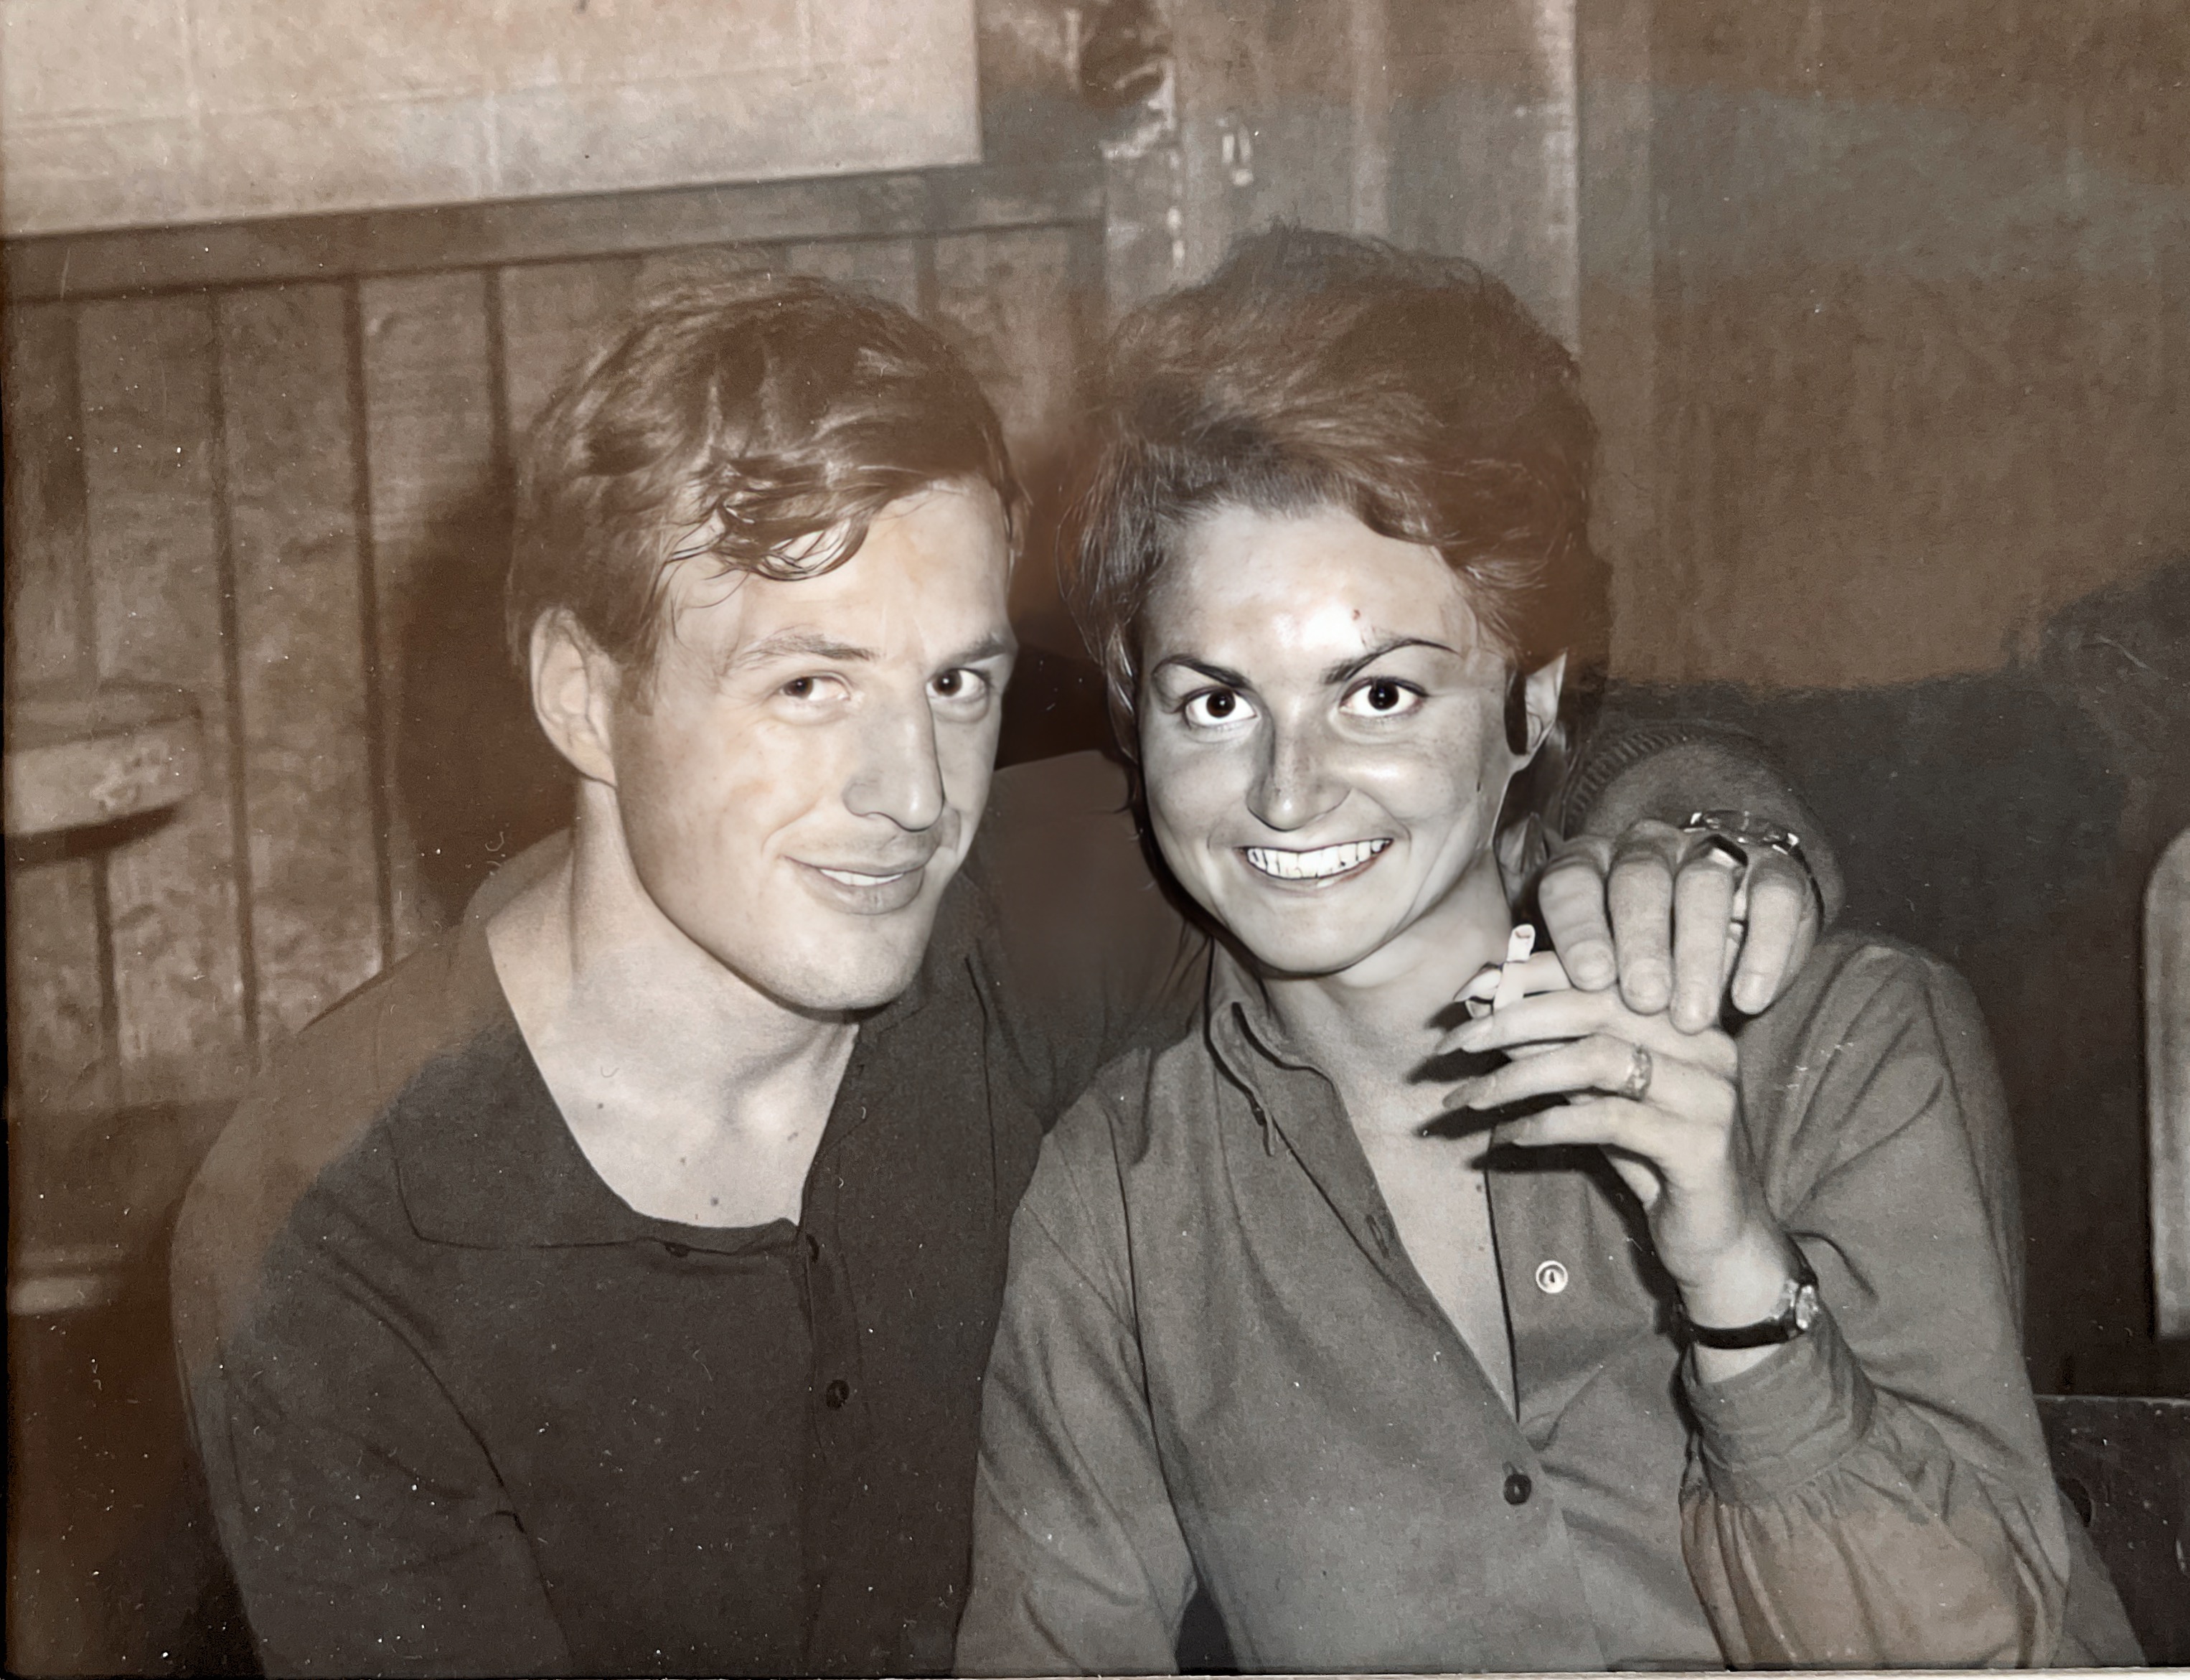 Süsse Erinnerung an einen schönen Abend in Teddy Stauffer‘s Bar in Acapulco, Mexiko im Jahre 1967…